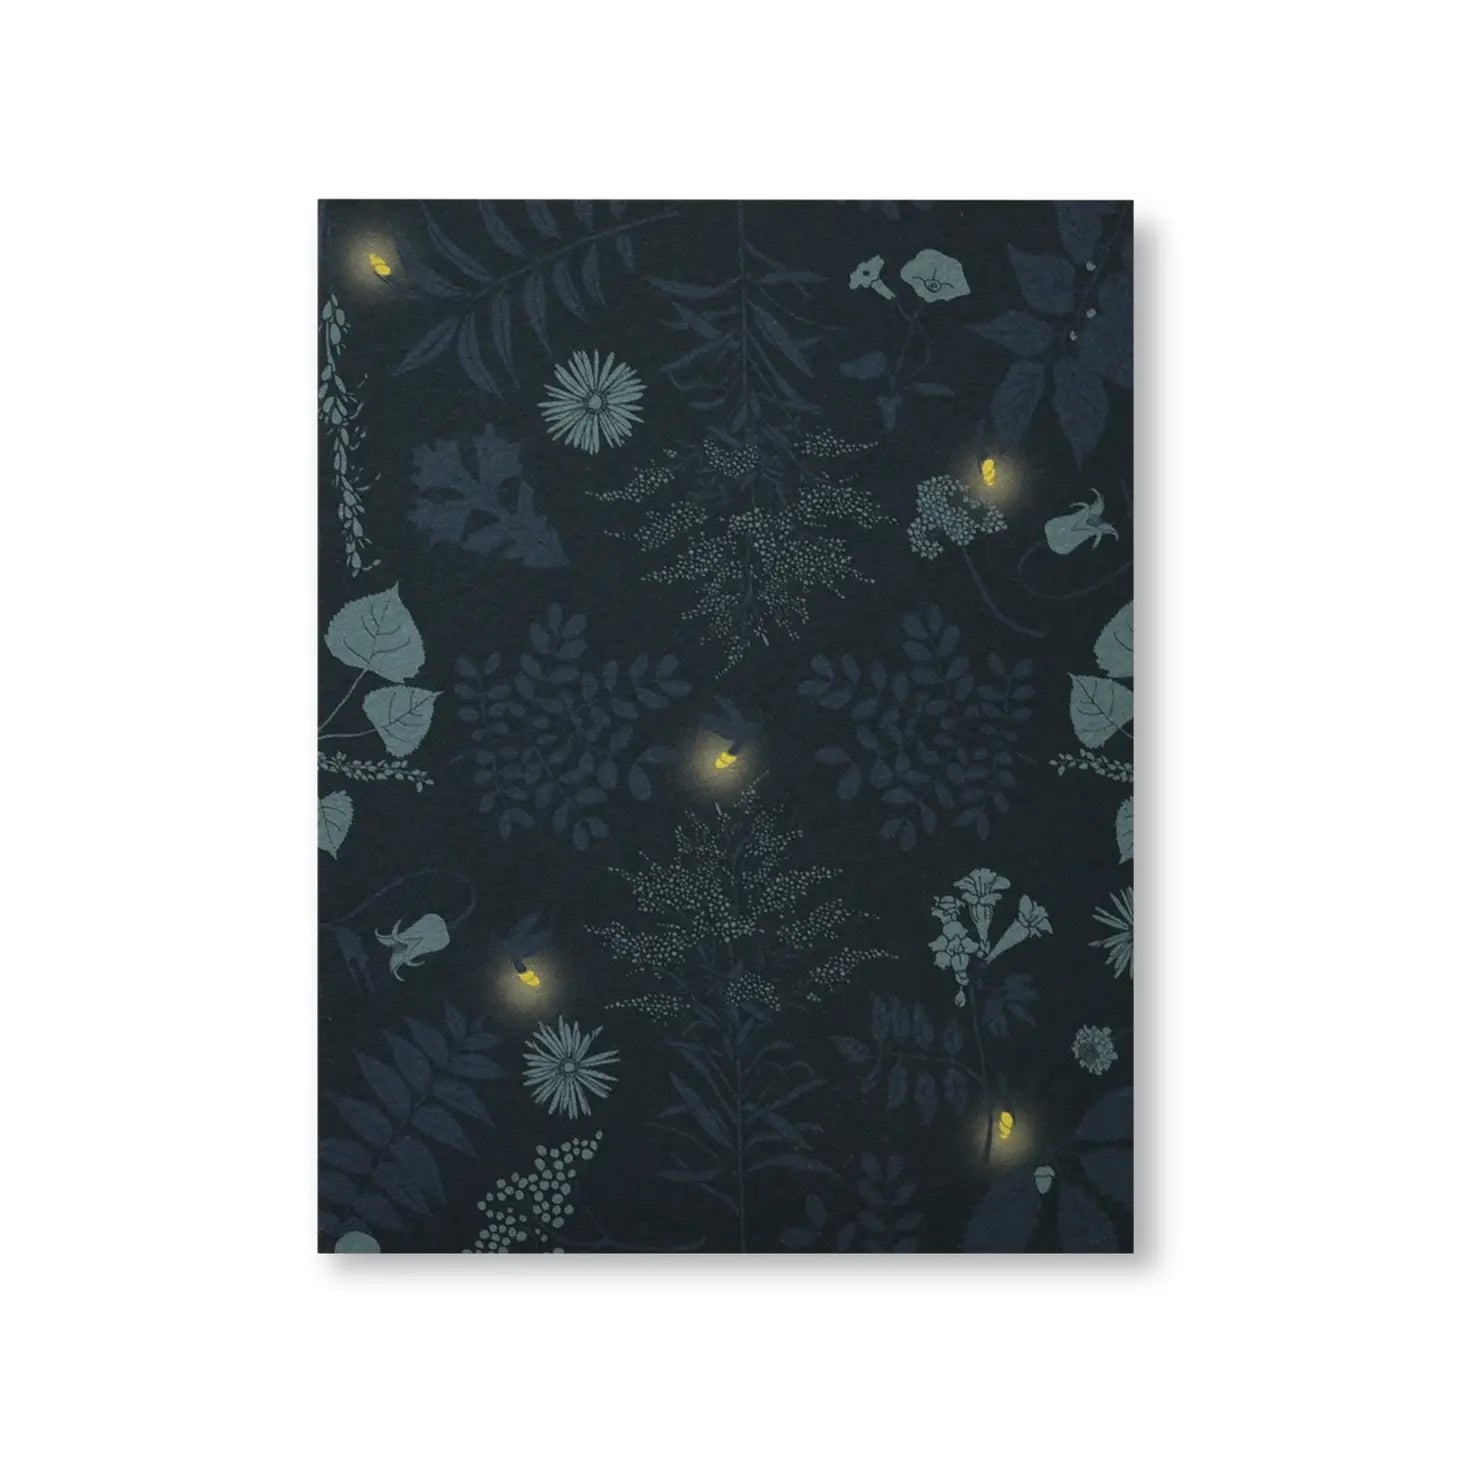 Fireflies Art Print - 8x10